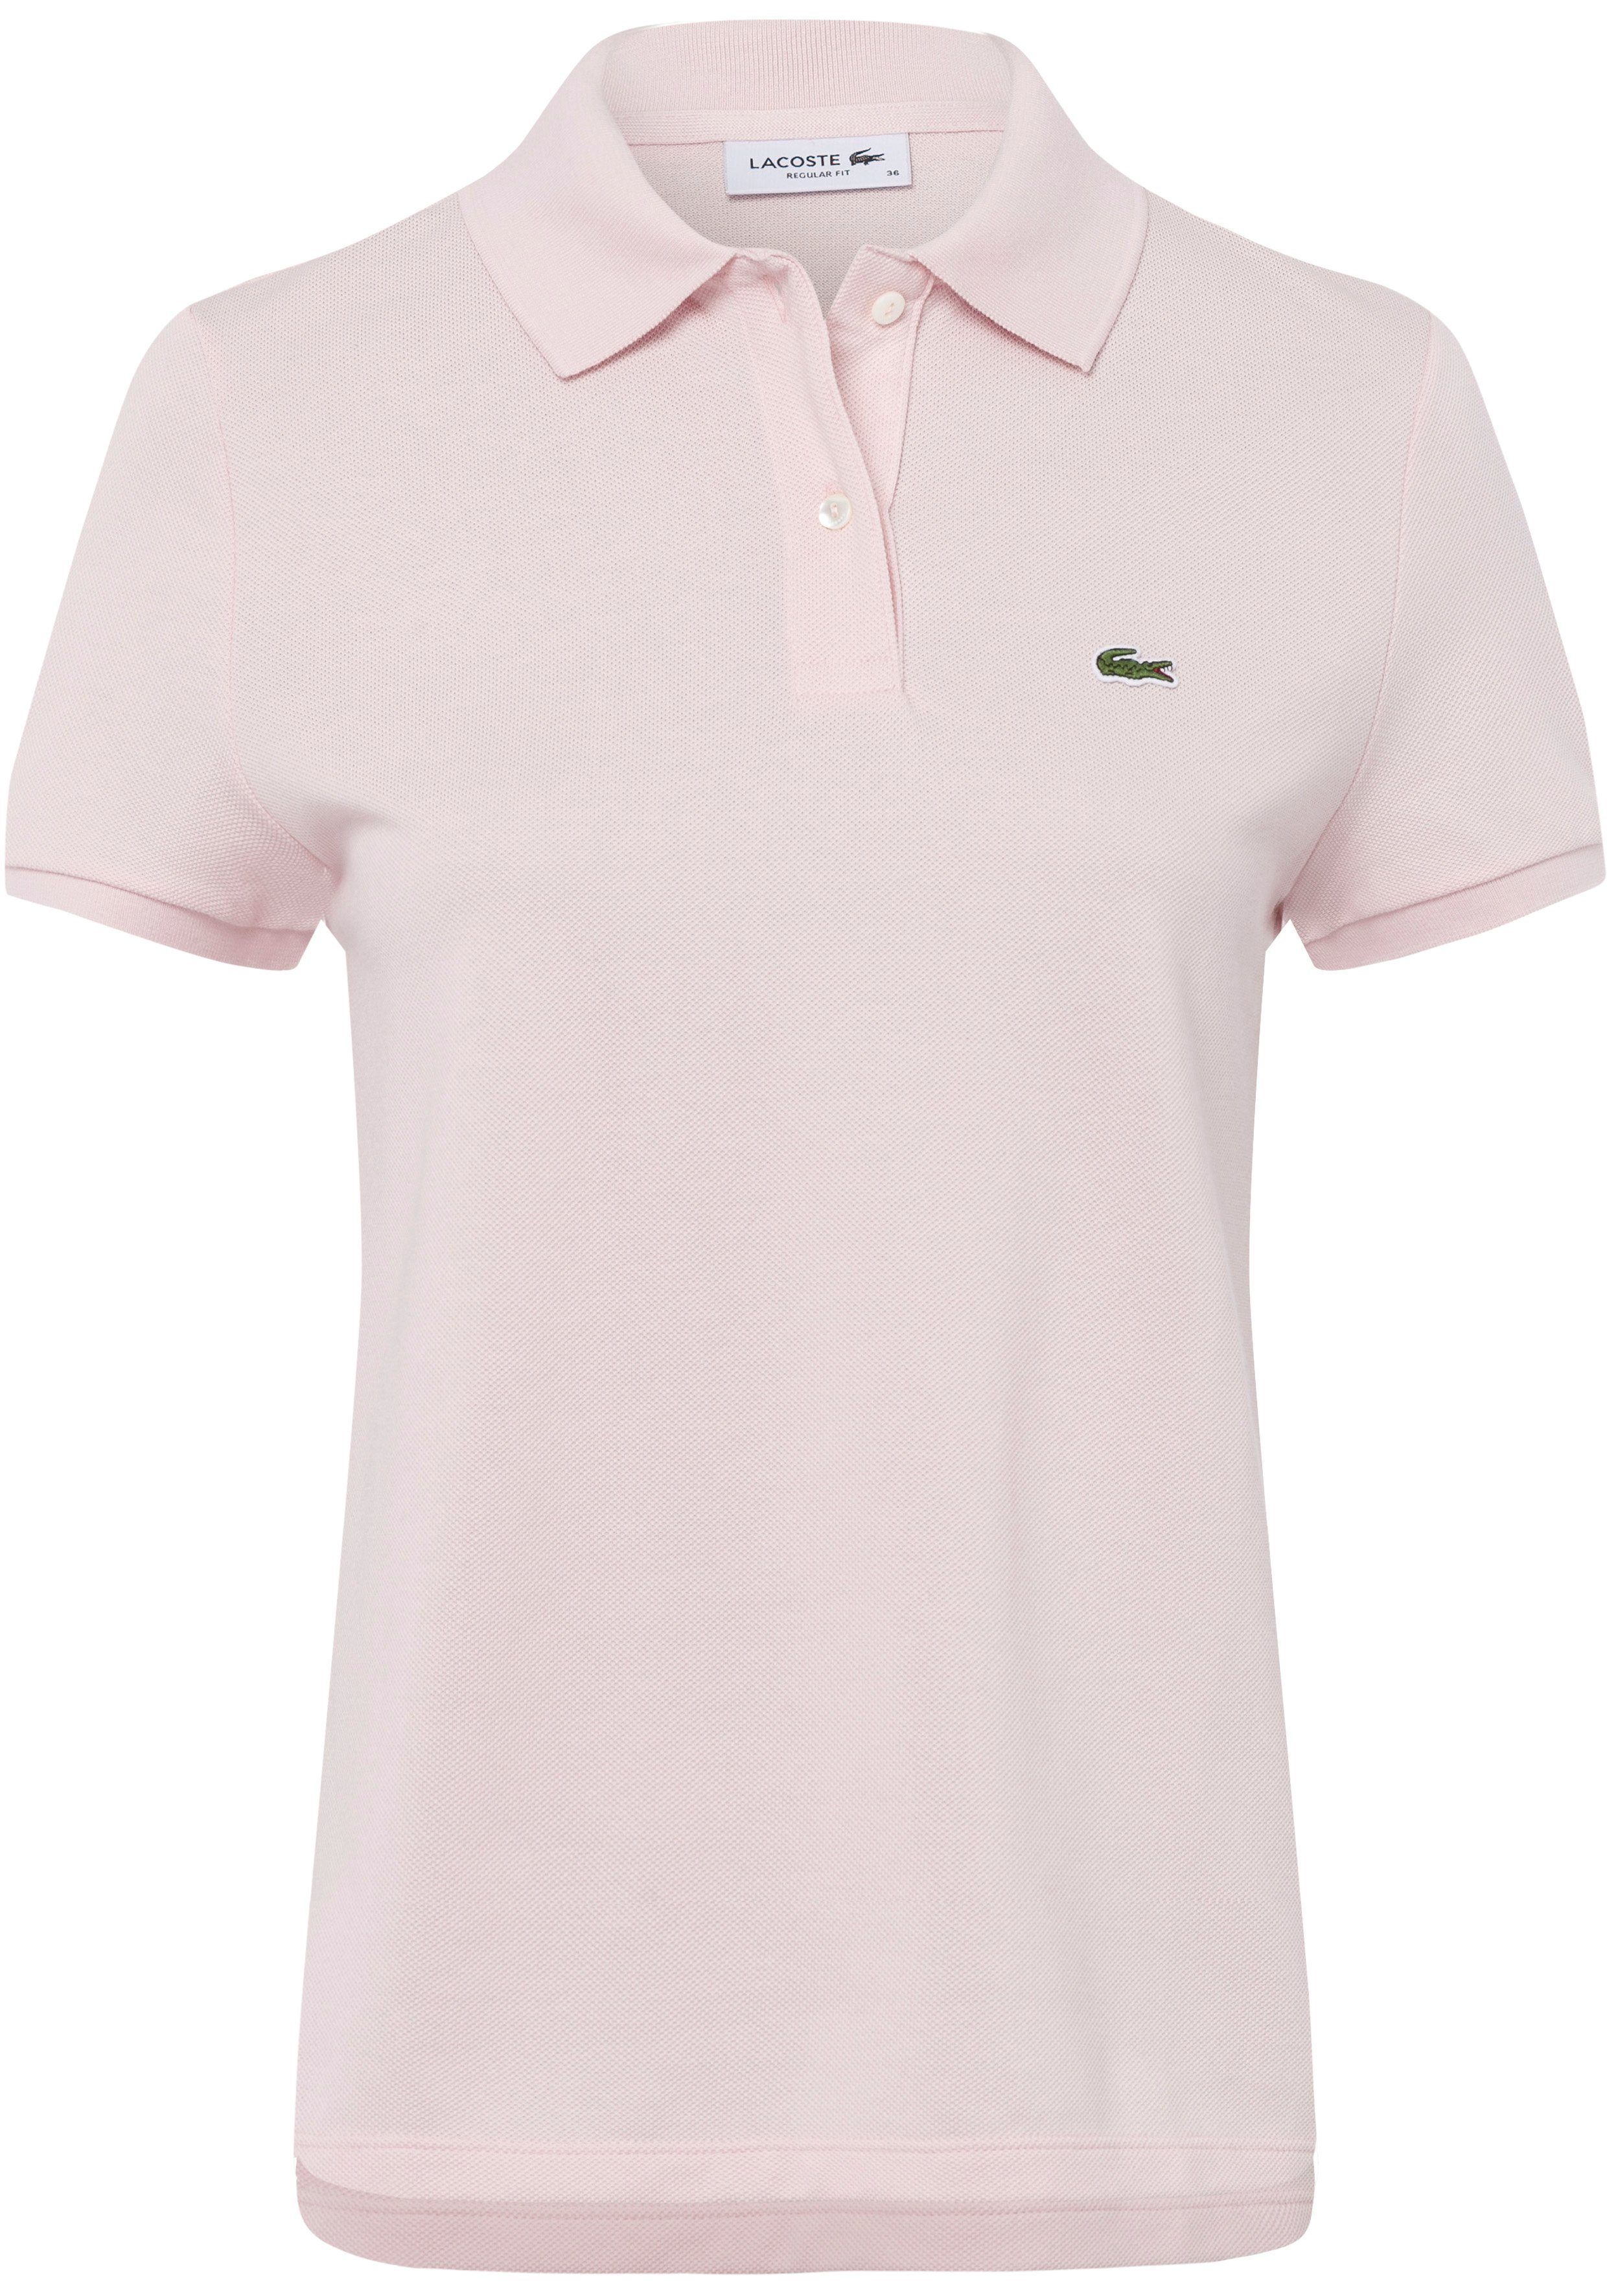 Lacoste Poloshirt mit Brust der Lacoste-Logo-Patch rosa auf